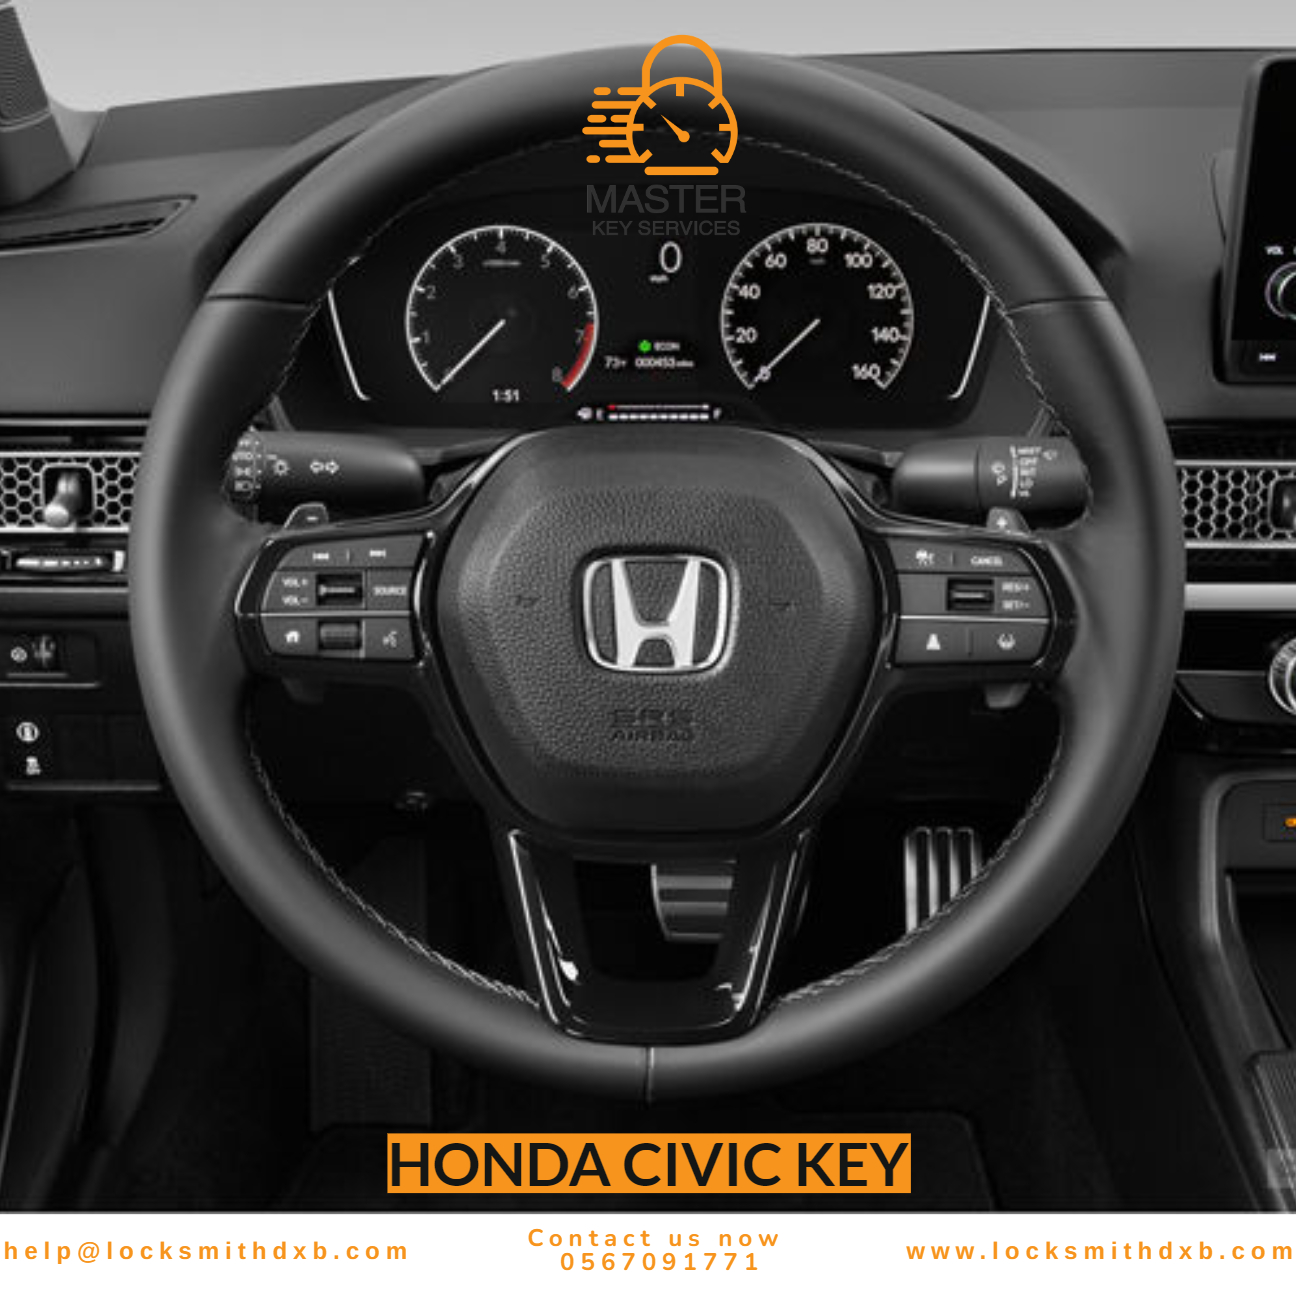 Honda civic key